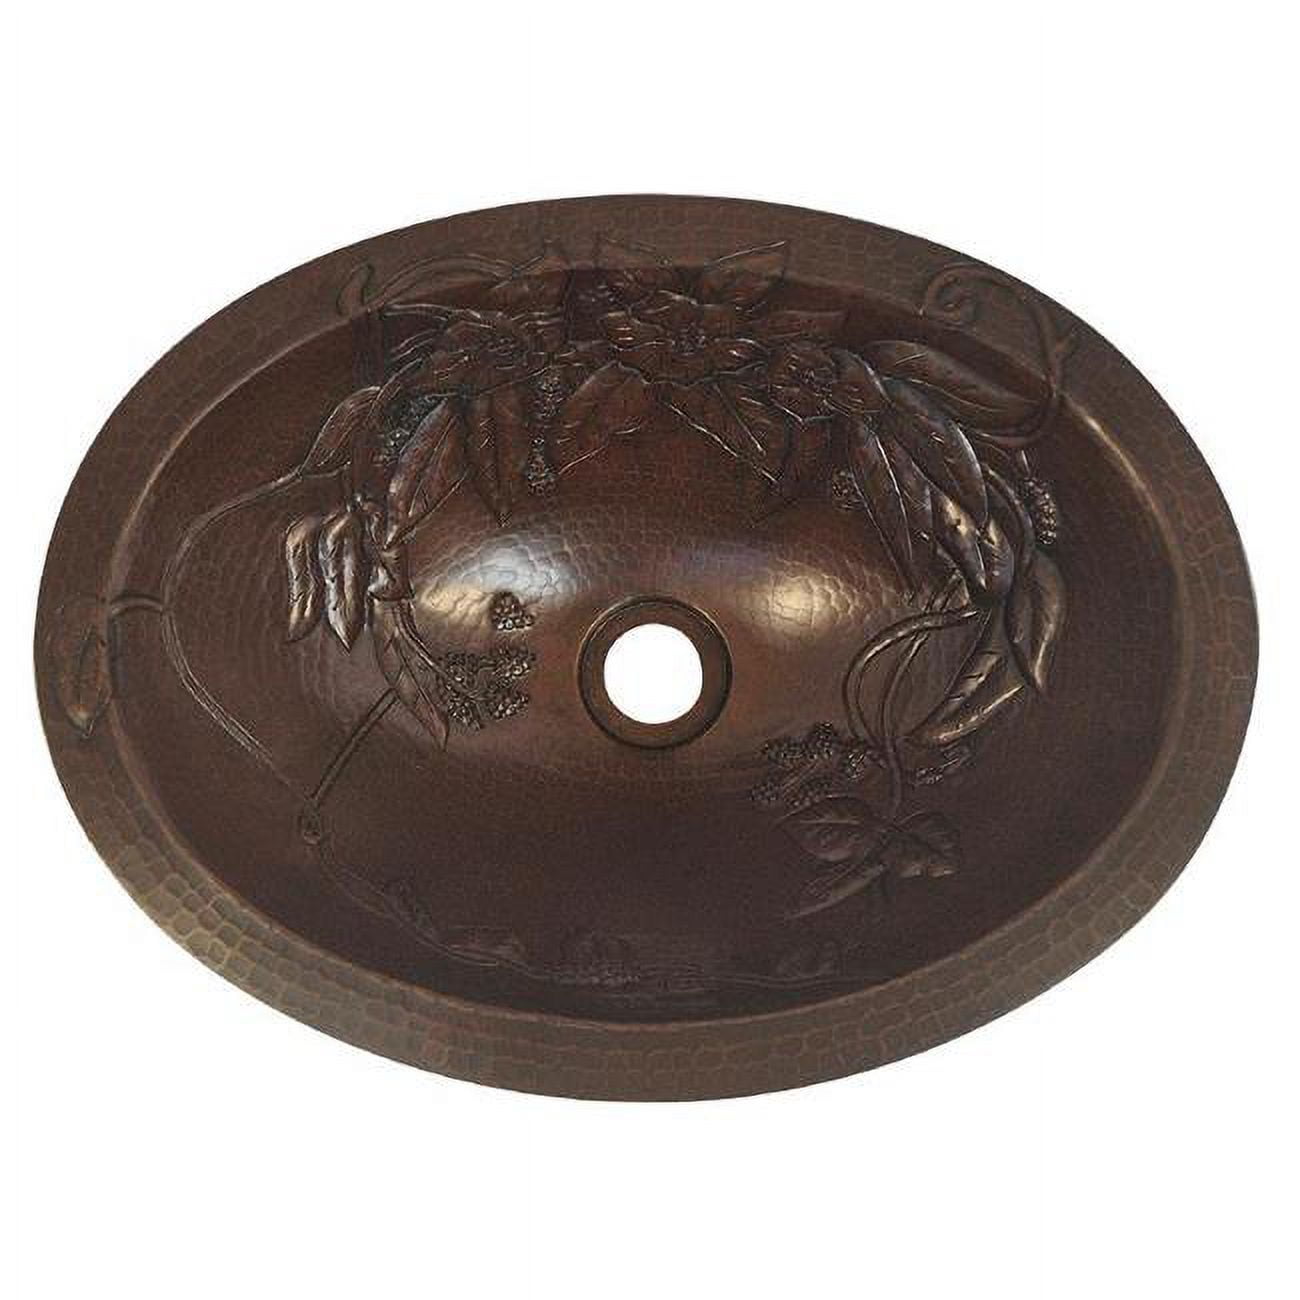 Cos-flo-17-fl-db Copper Oval Bath Sink, Dark Brown - Floral Design - 5.5 X 12.5 X 17 In.